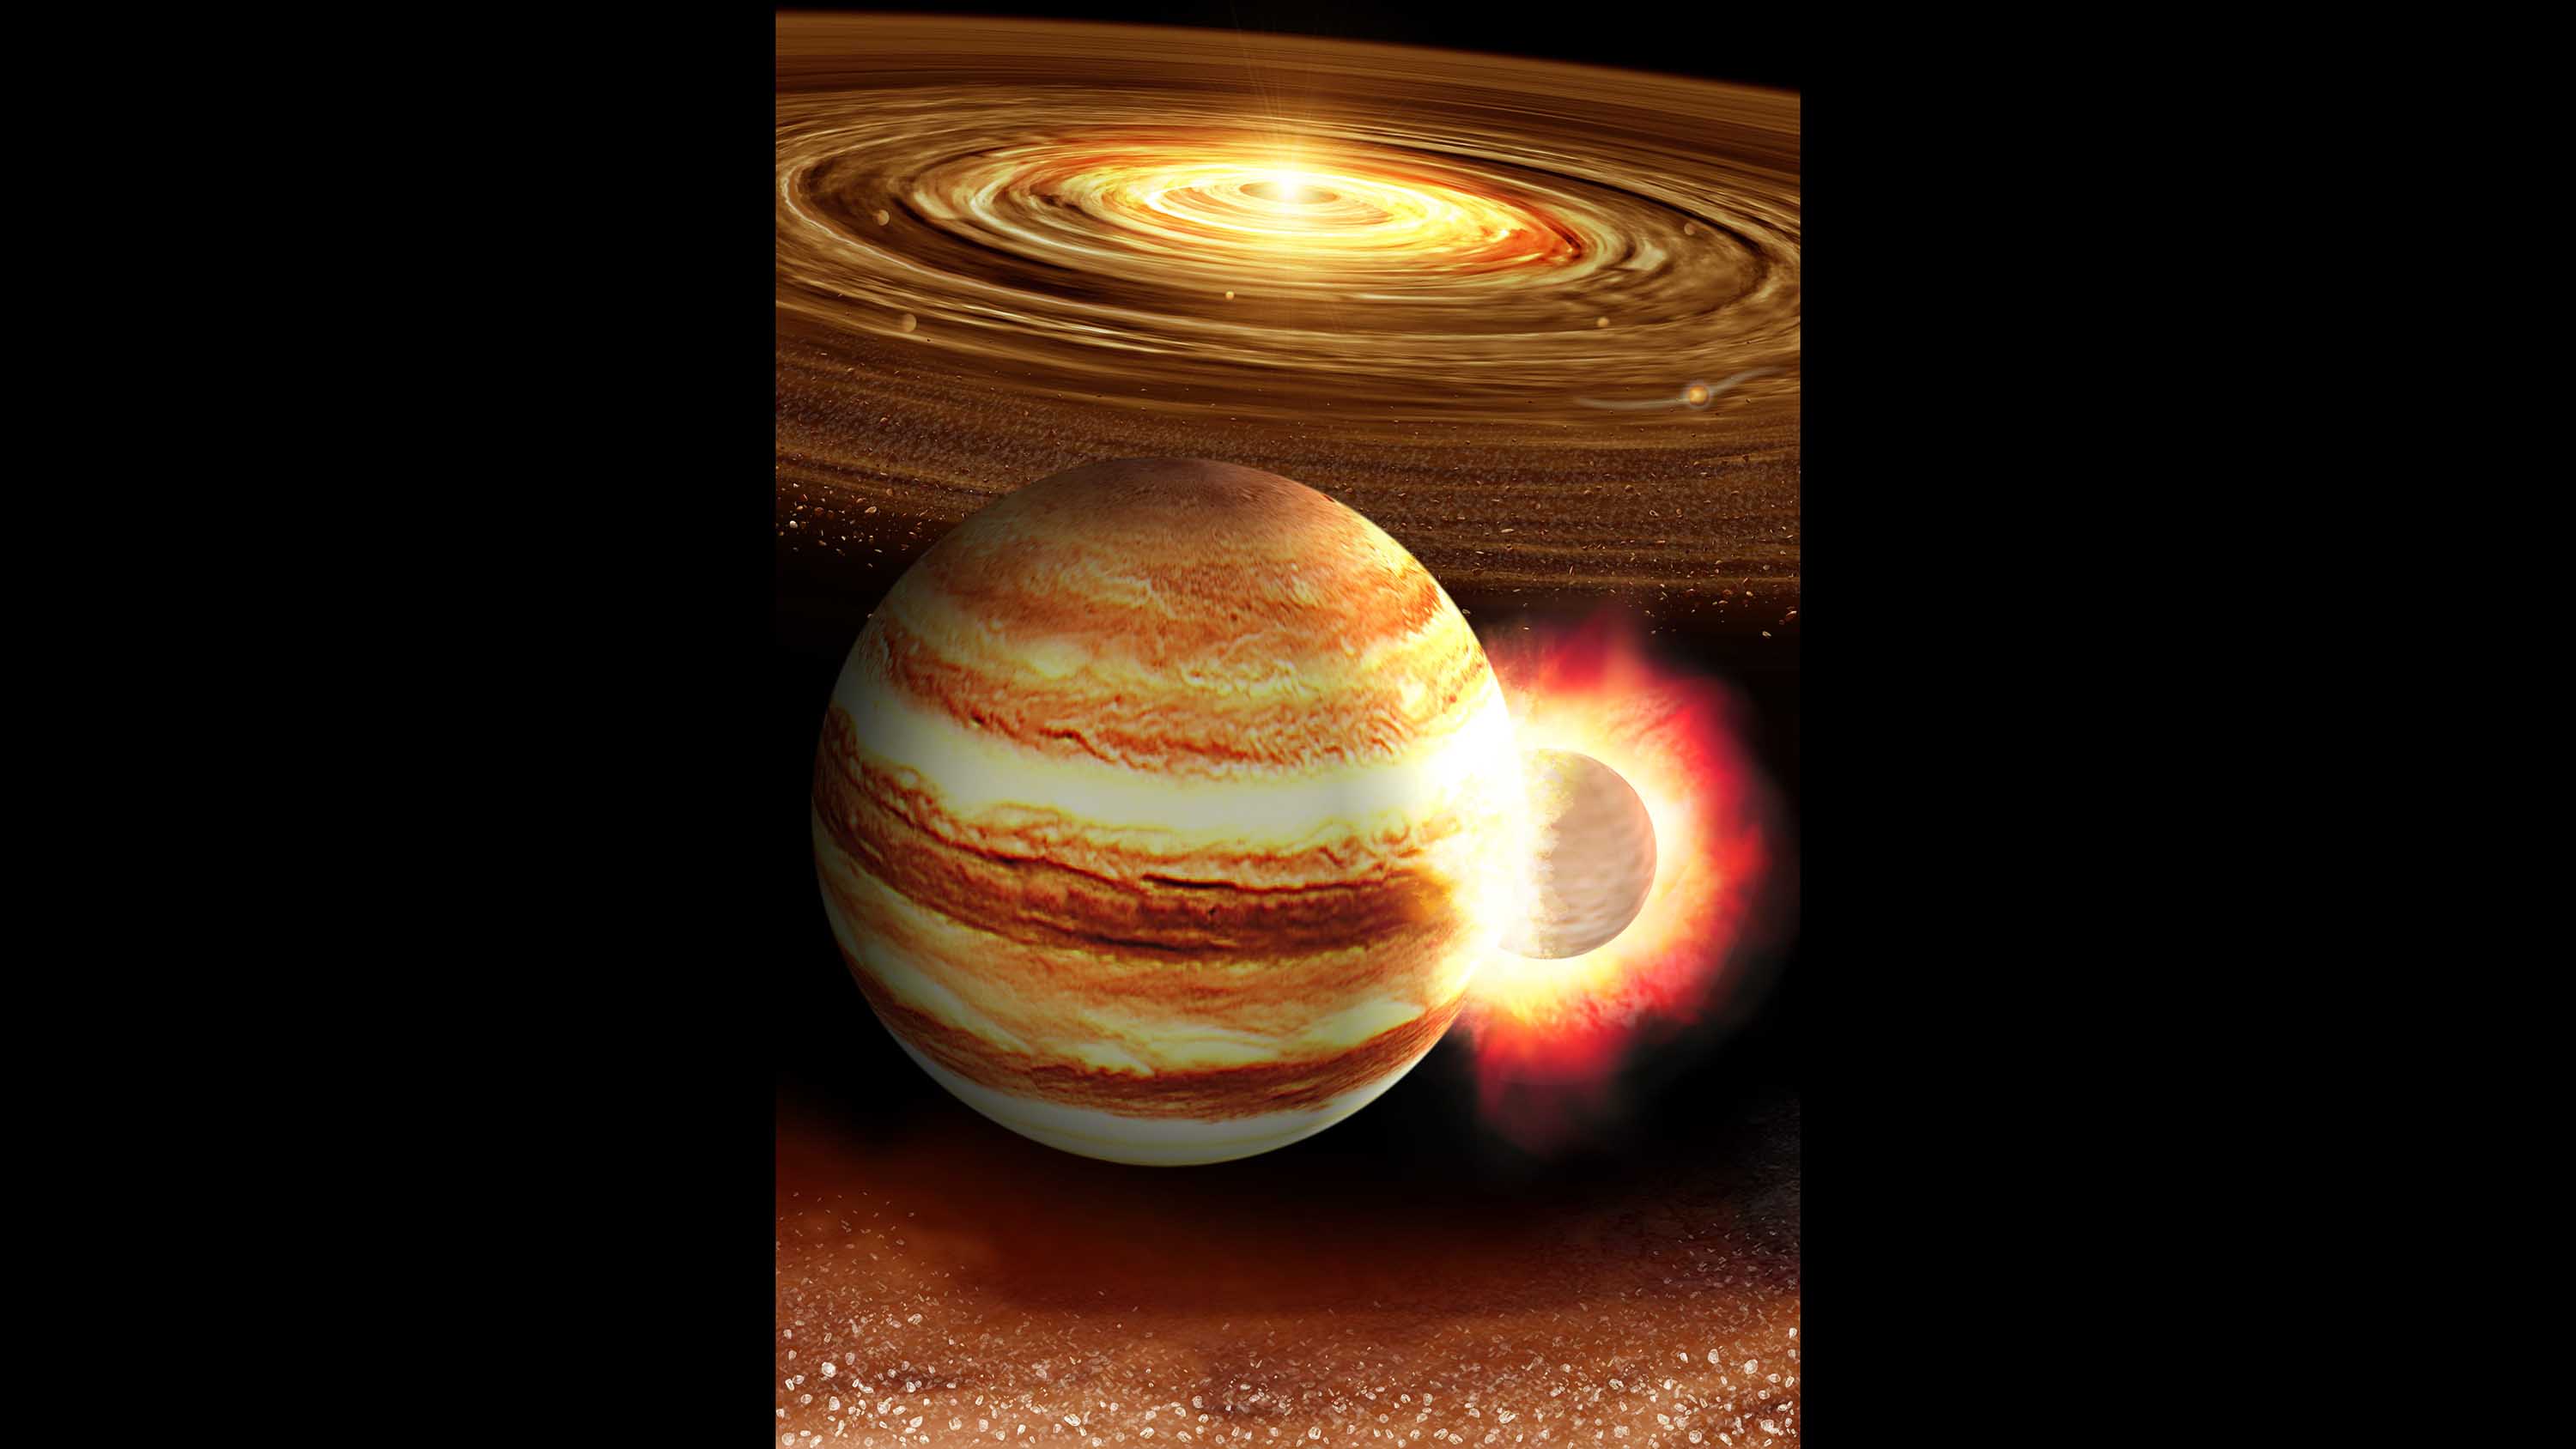 jupiter location in solar system